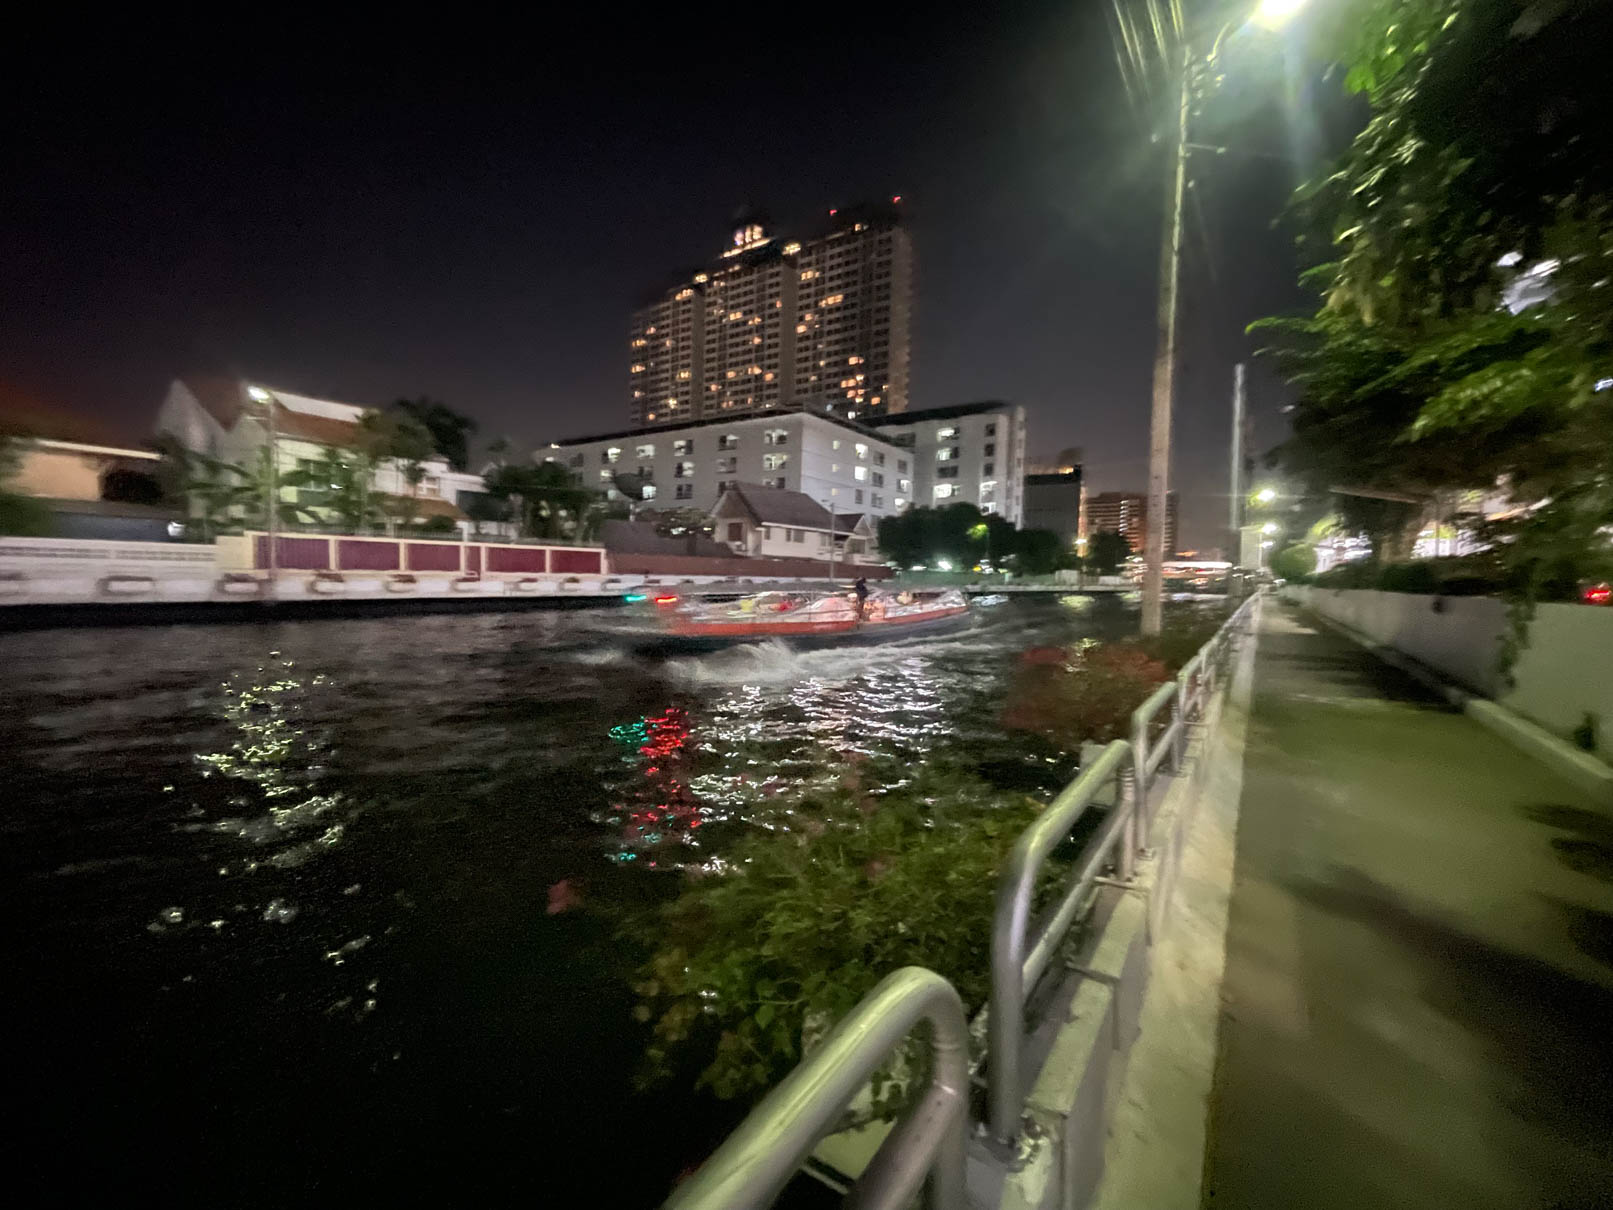 [曼谷•旅遊] 東方威尼斯，沿著空盛桑運河乘船往上探索關里安水上市場Khwan Riam Floating Market：感受運河歷史的在地旅遊-民武里Min Buri @IamLily 2.0